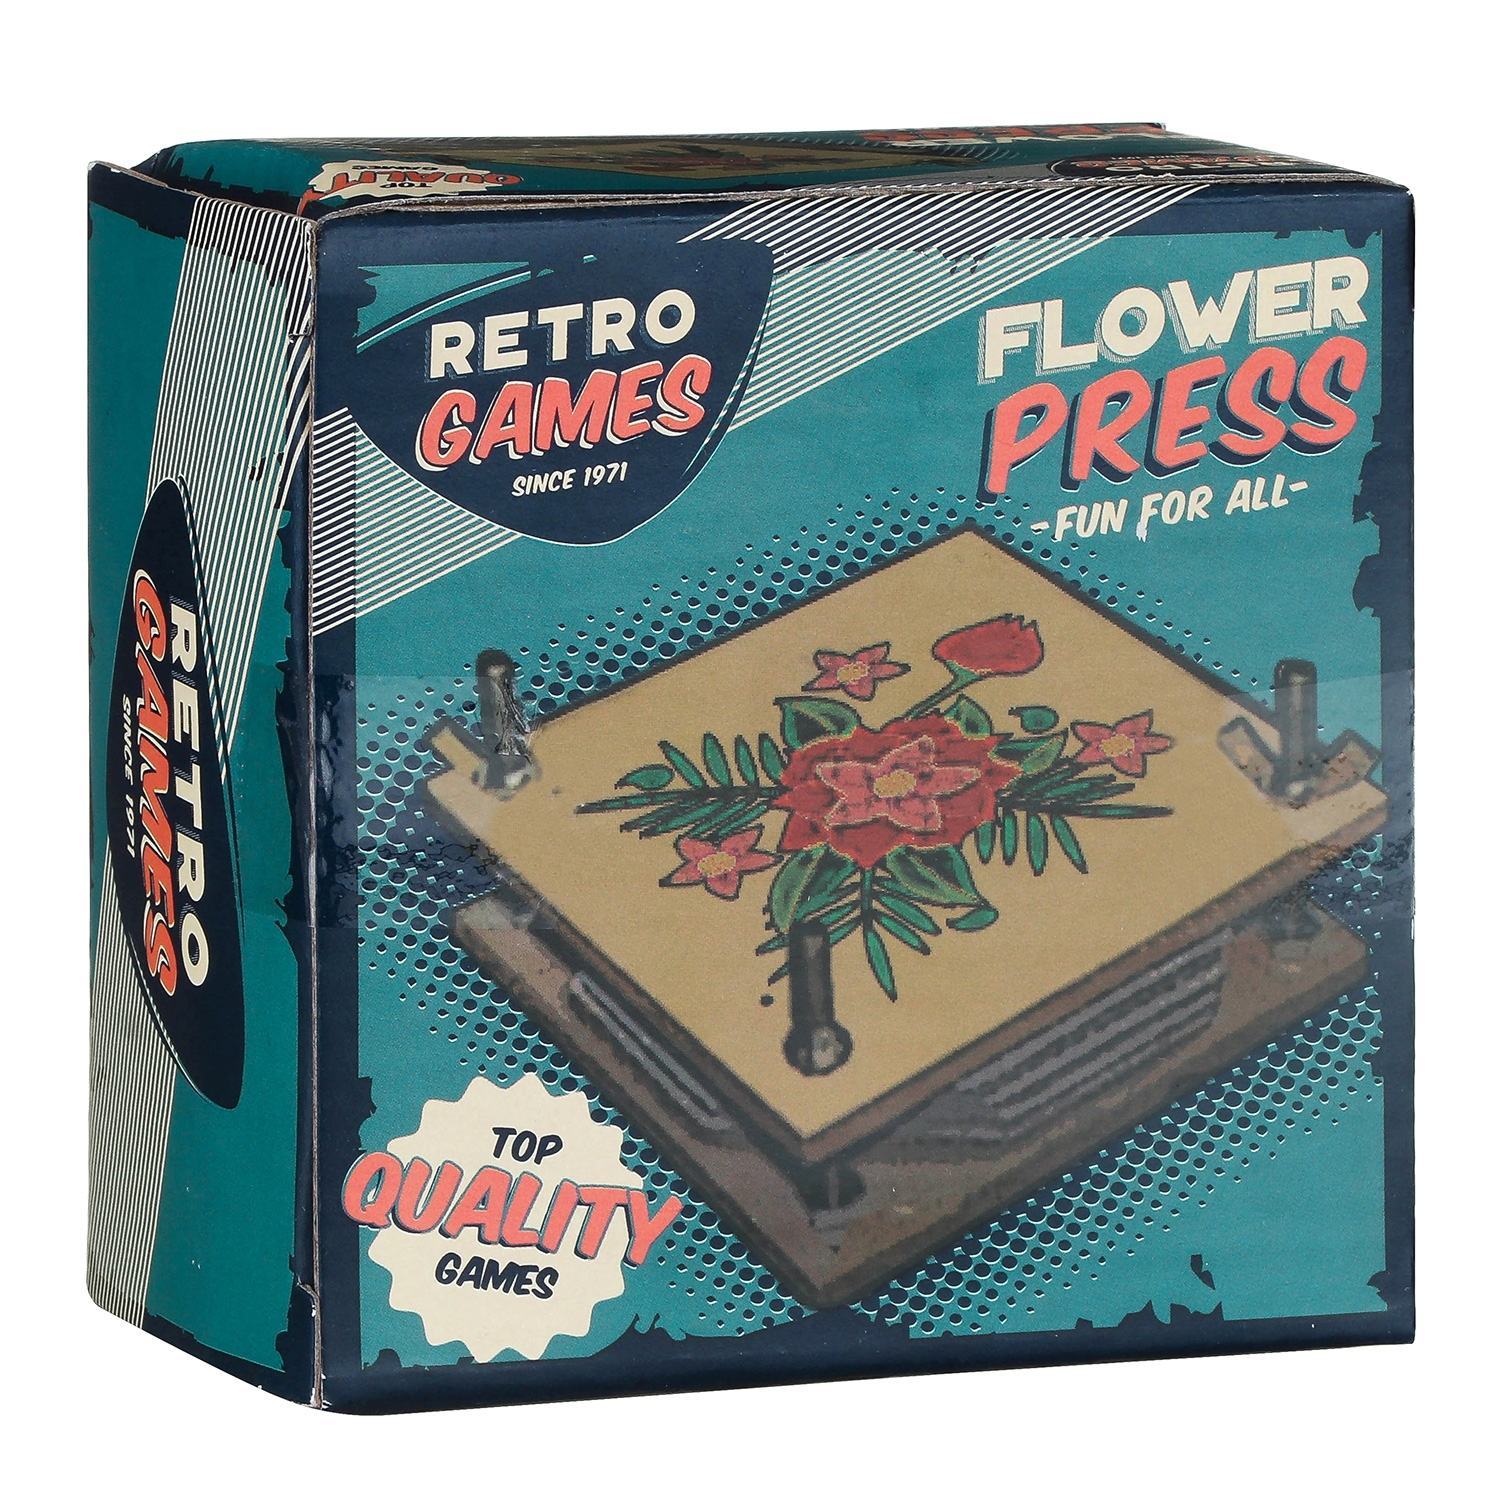 Retro Games Wooden Flower Press - Indoor Outdoors